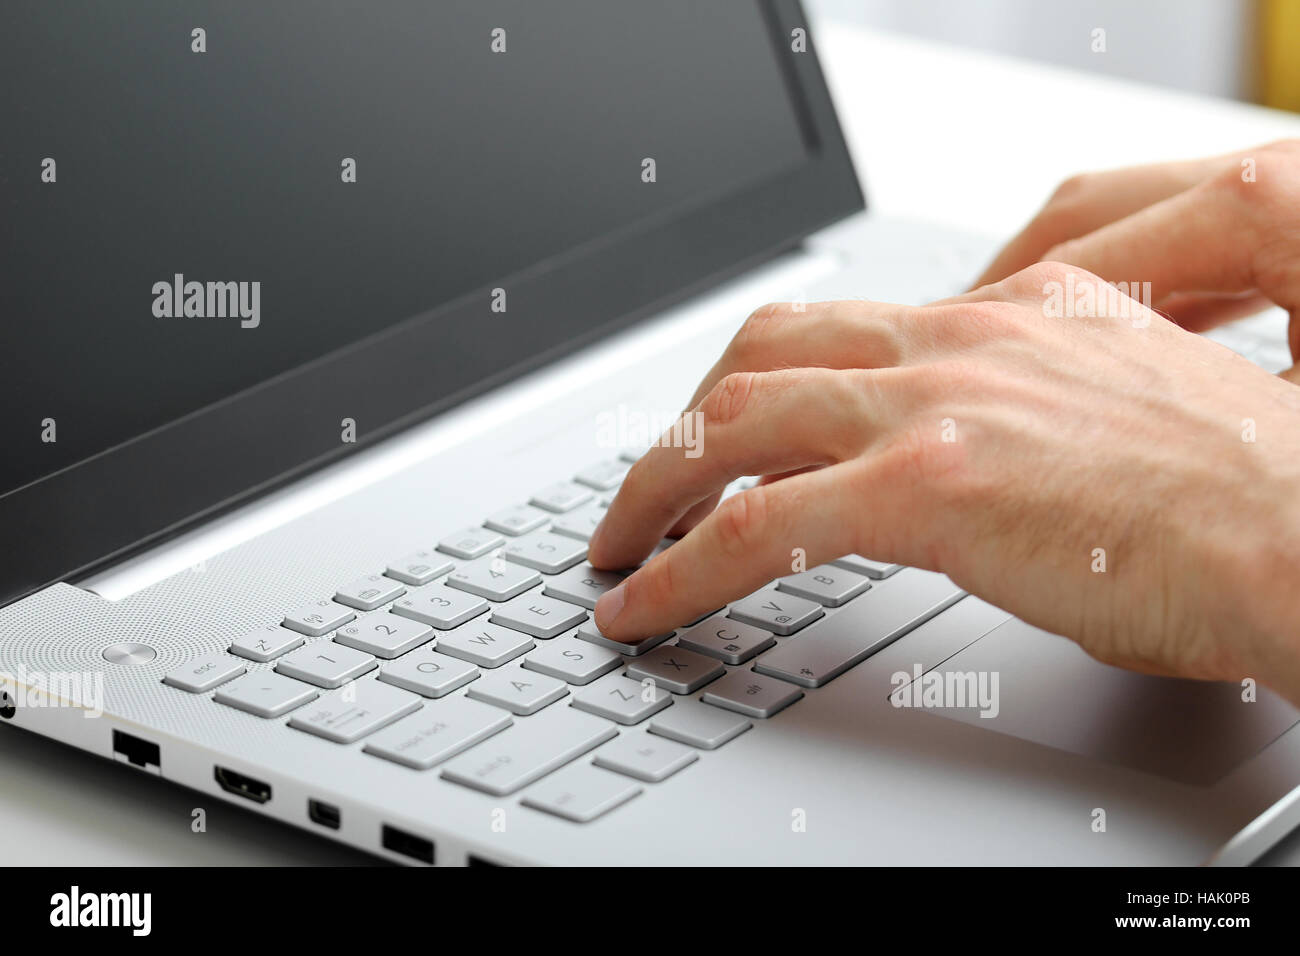 Mani digitando sulla tastiera del notebook Foto Stock